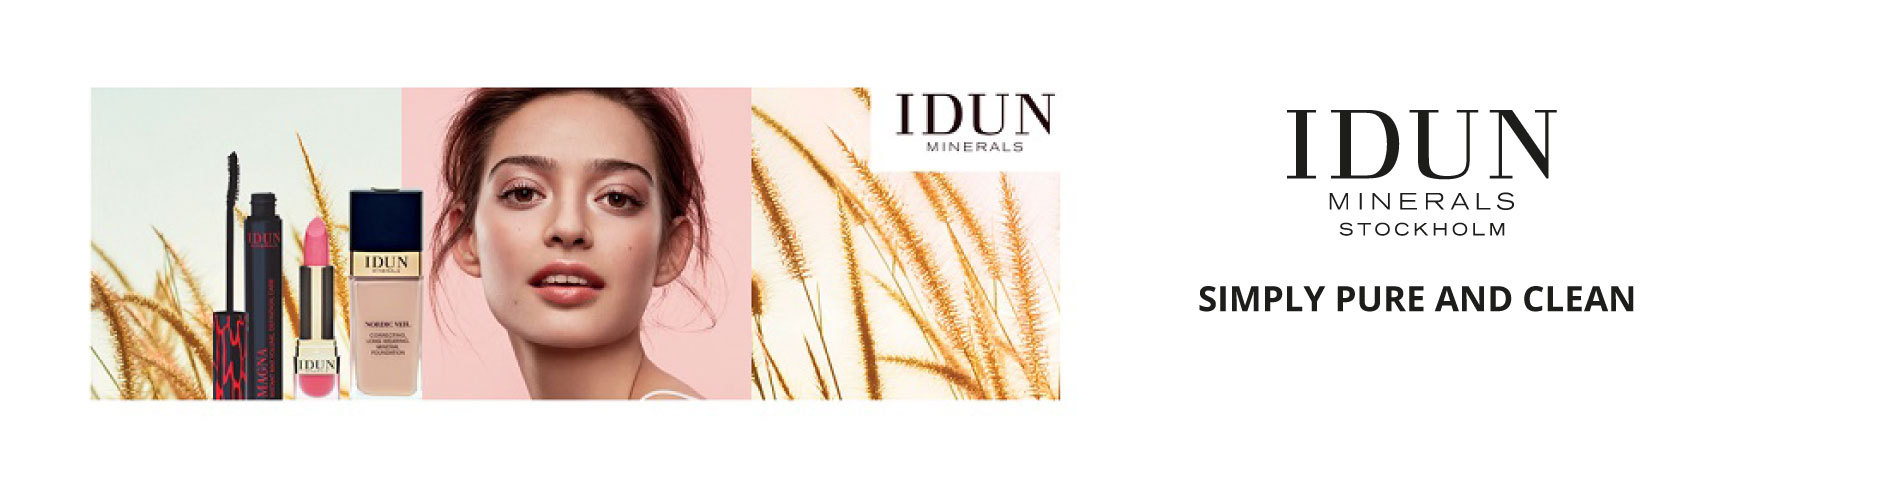 Idun_minerals